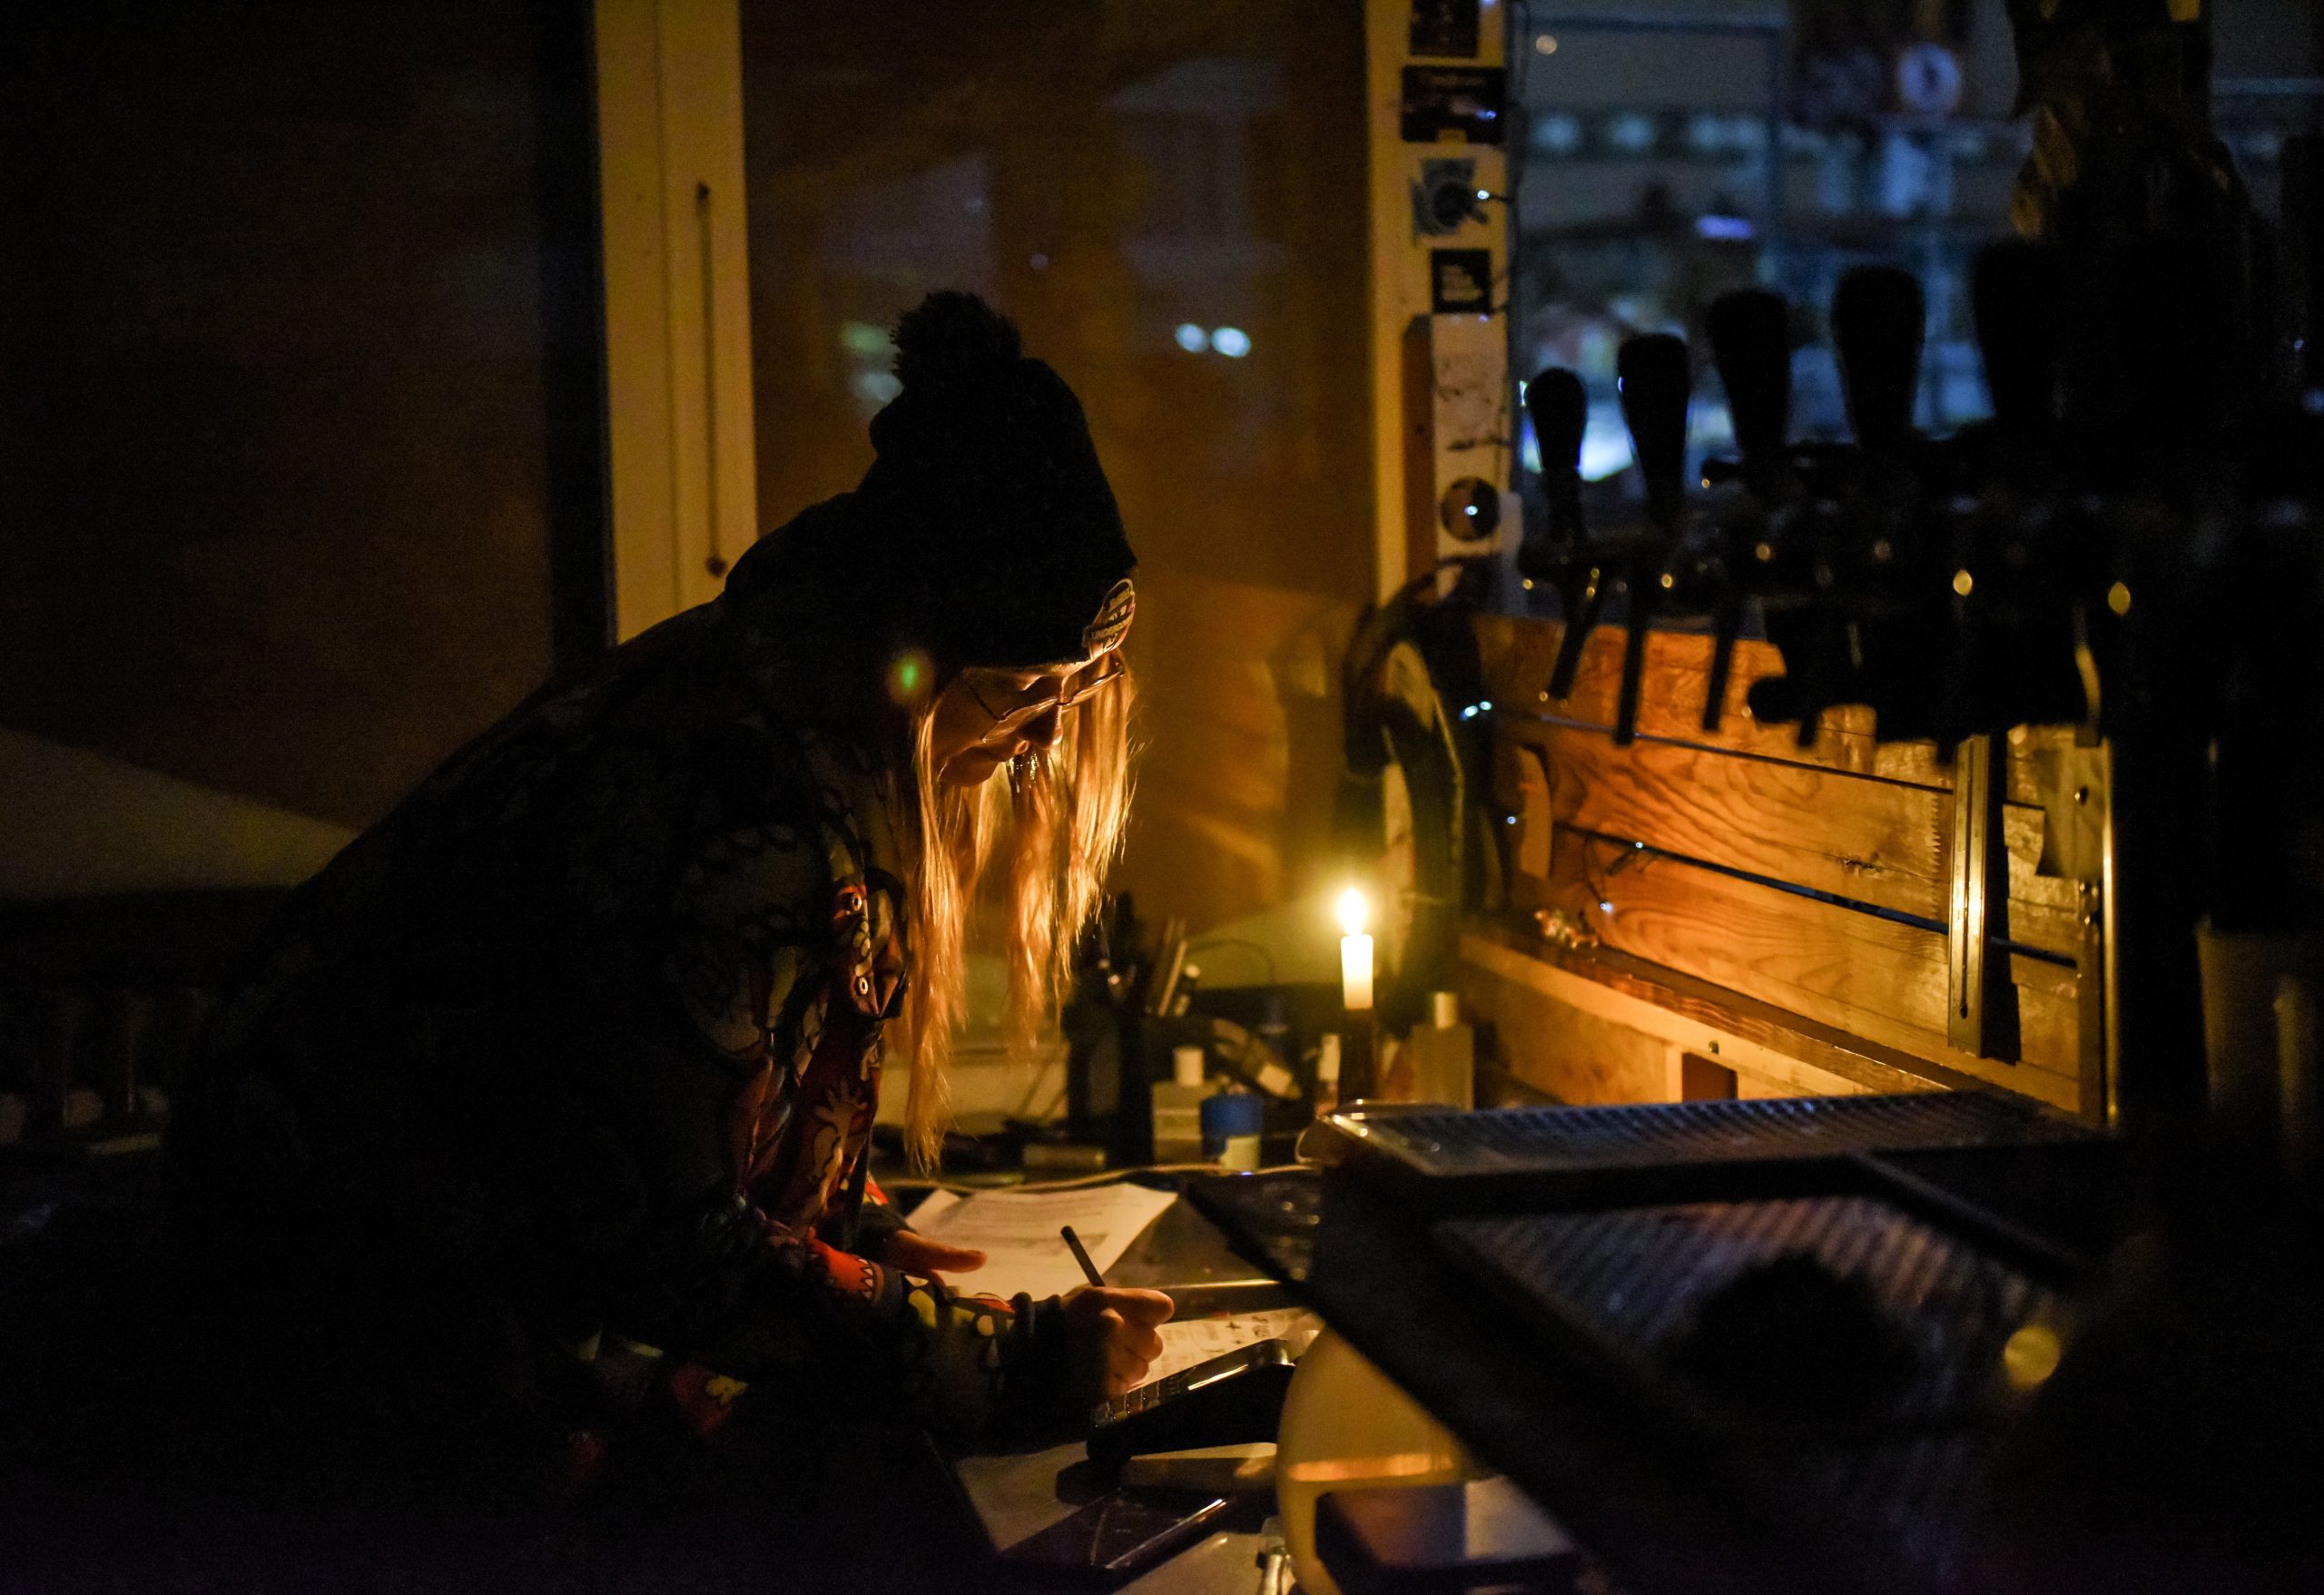 看世界)乌克兰陷断电困局 民众自行取暖致火灾频生 1日死9人